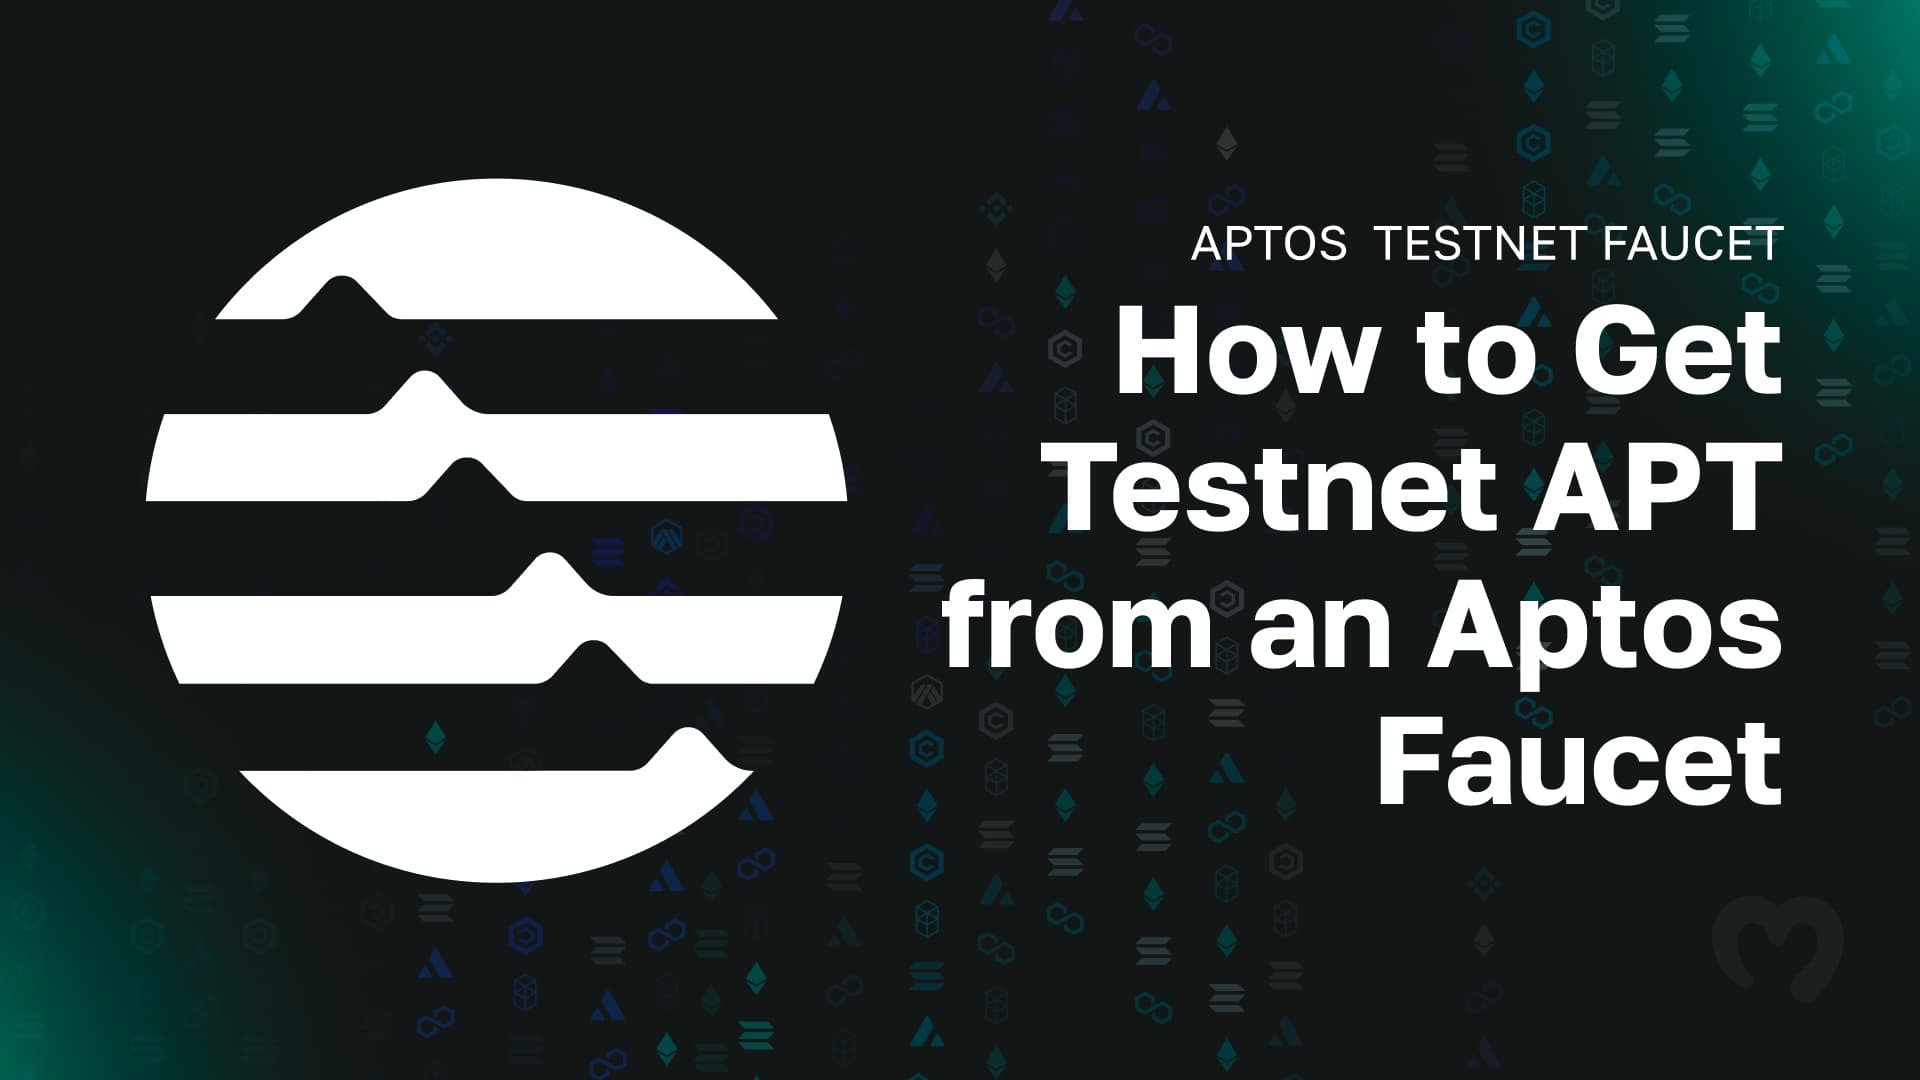 Aptos Testnet Faucet - How to Get Testnet APT from an Aptos Faucet